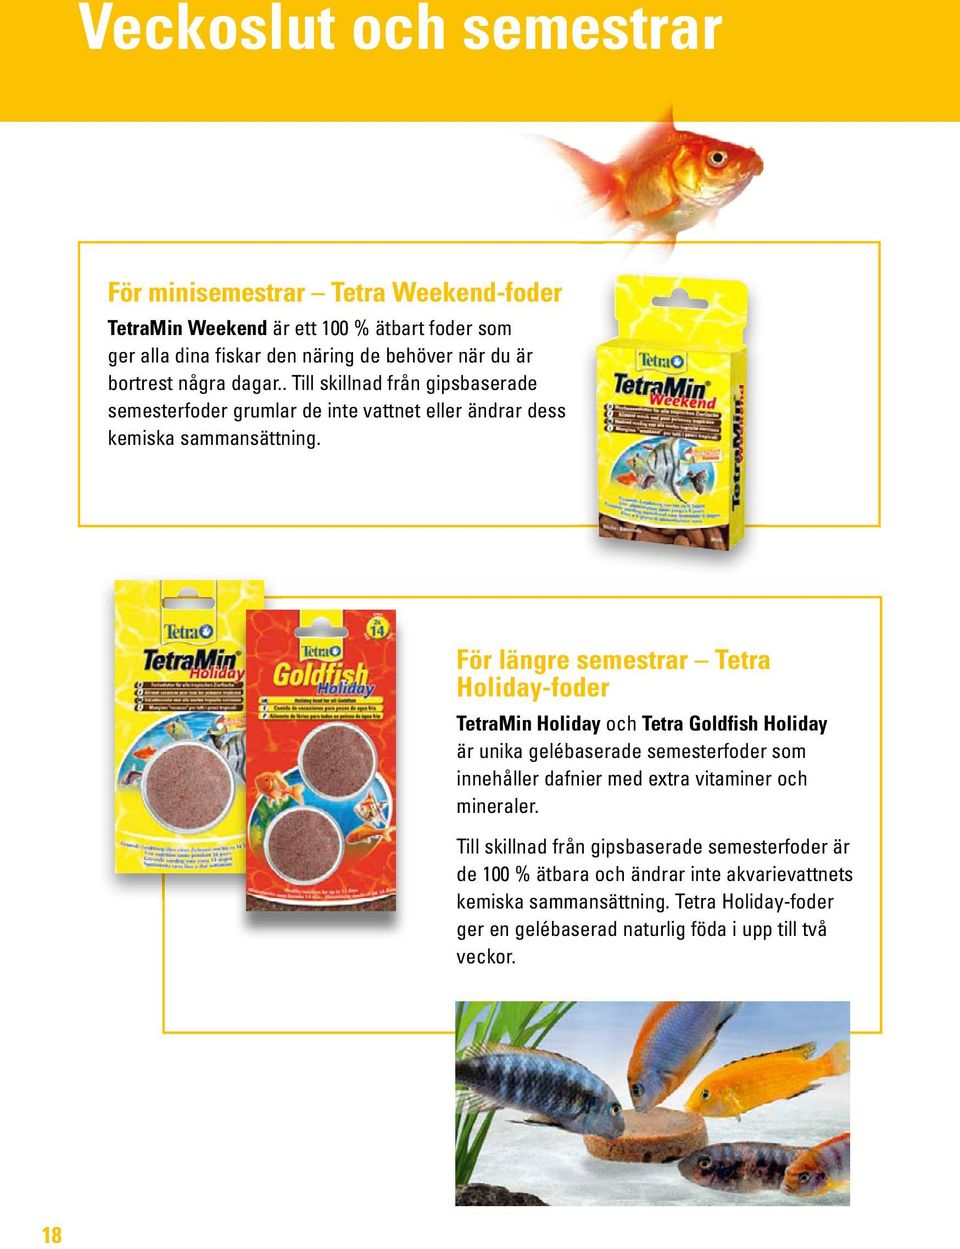 För längre semestrar Tetra Holiday-foder TetraMin Holiday och Tetra Goldfish Holiday är unika gelébaserade semesterfoder som innehåller dafnier med extra vitaminer och